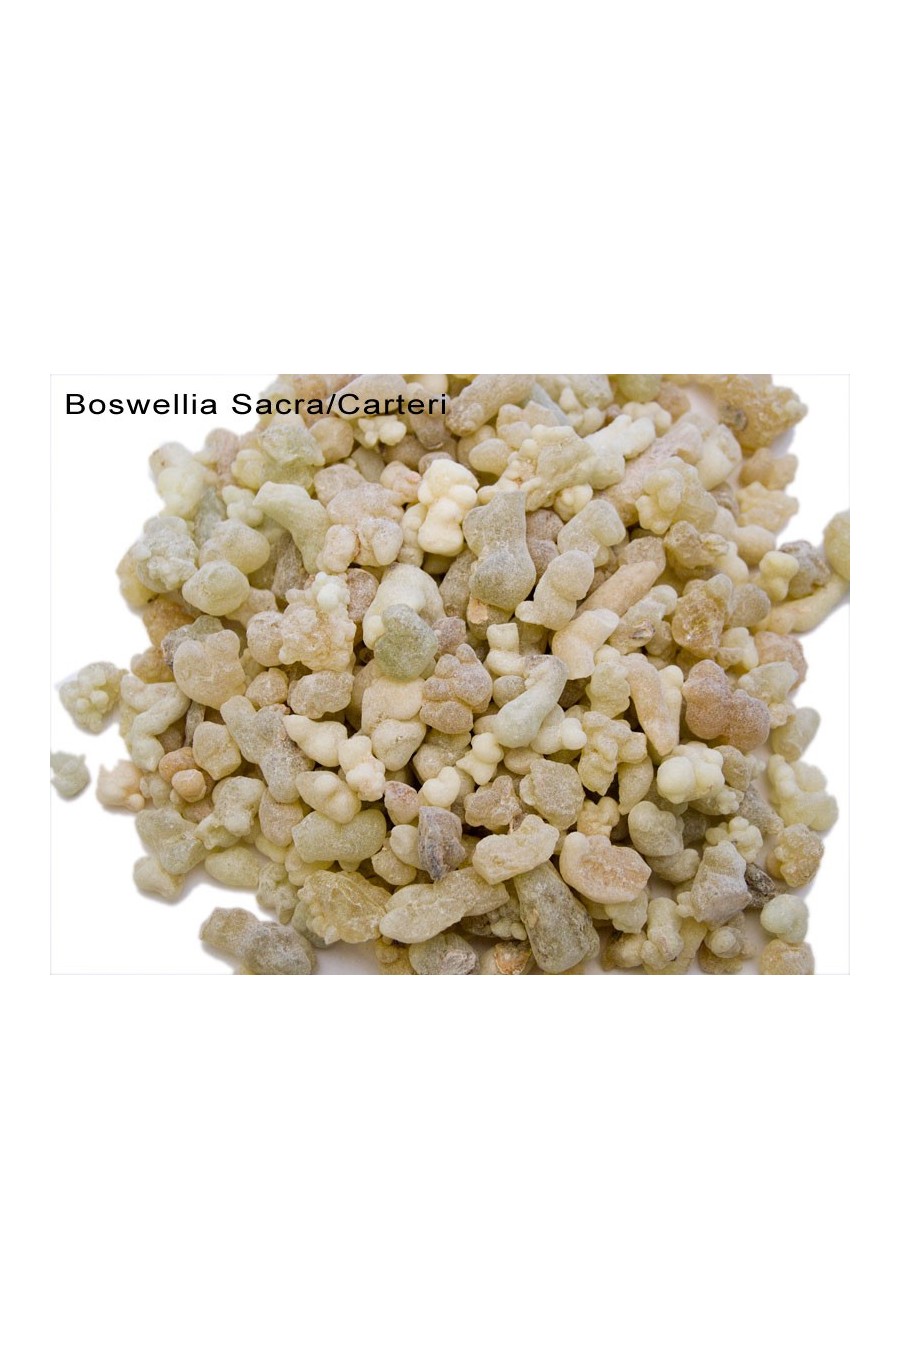 Frankincense (Boswellia sacra/carterii)